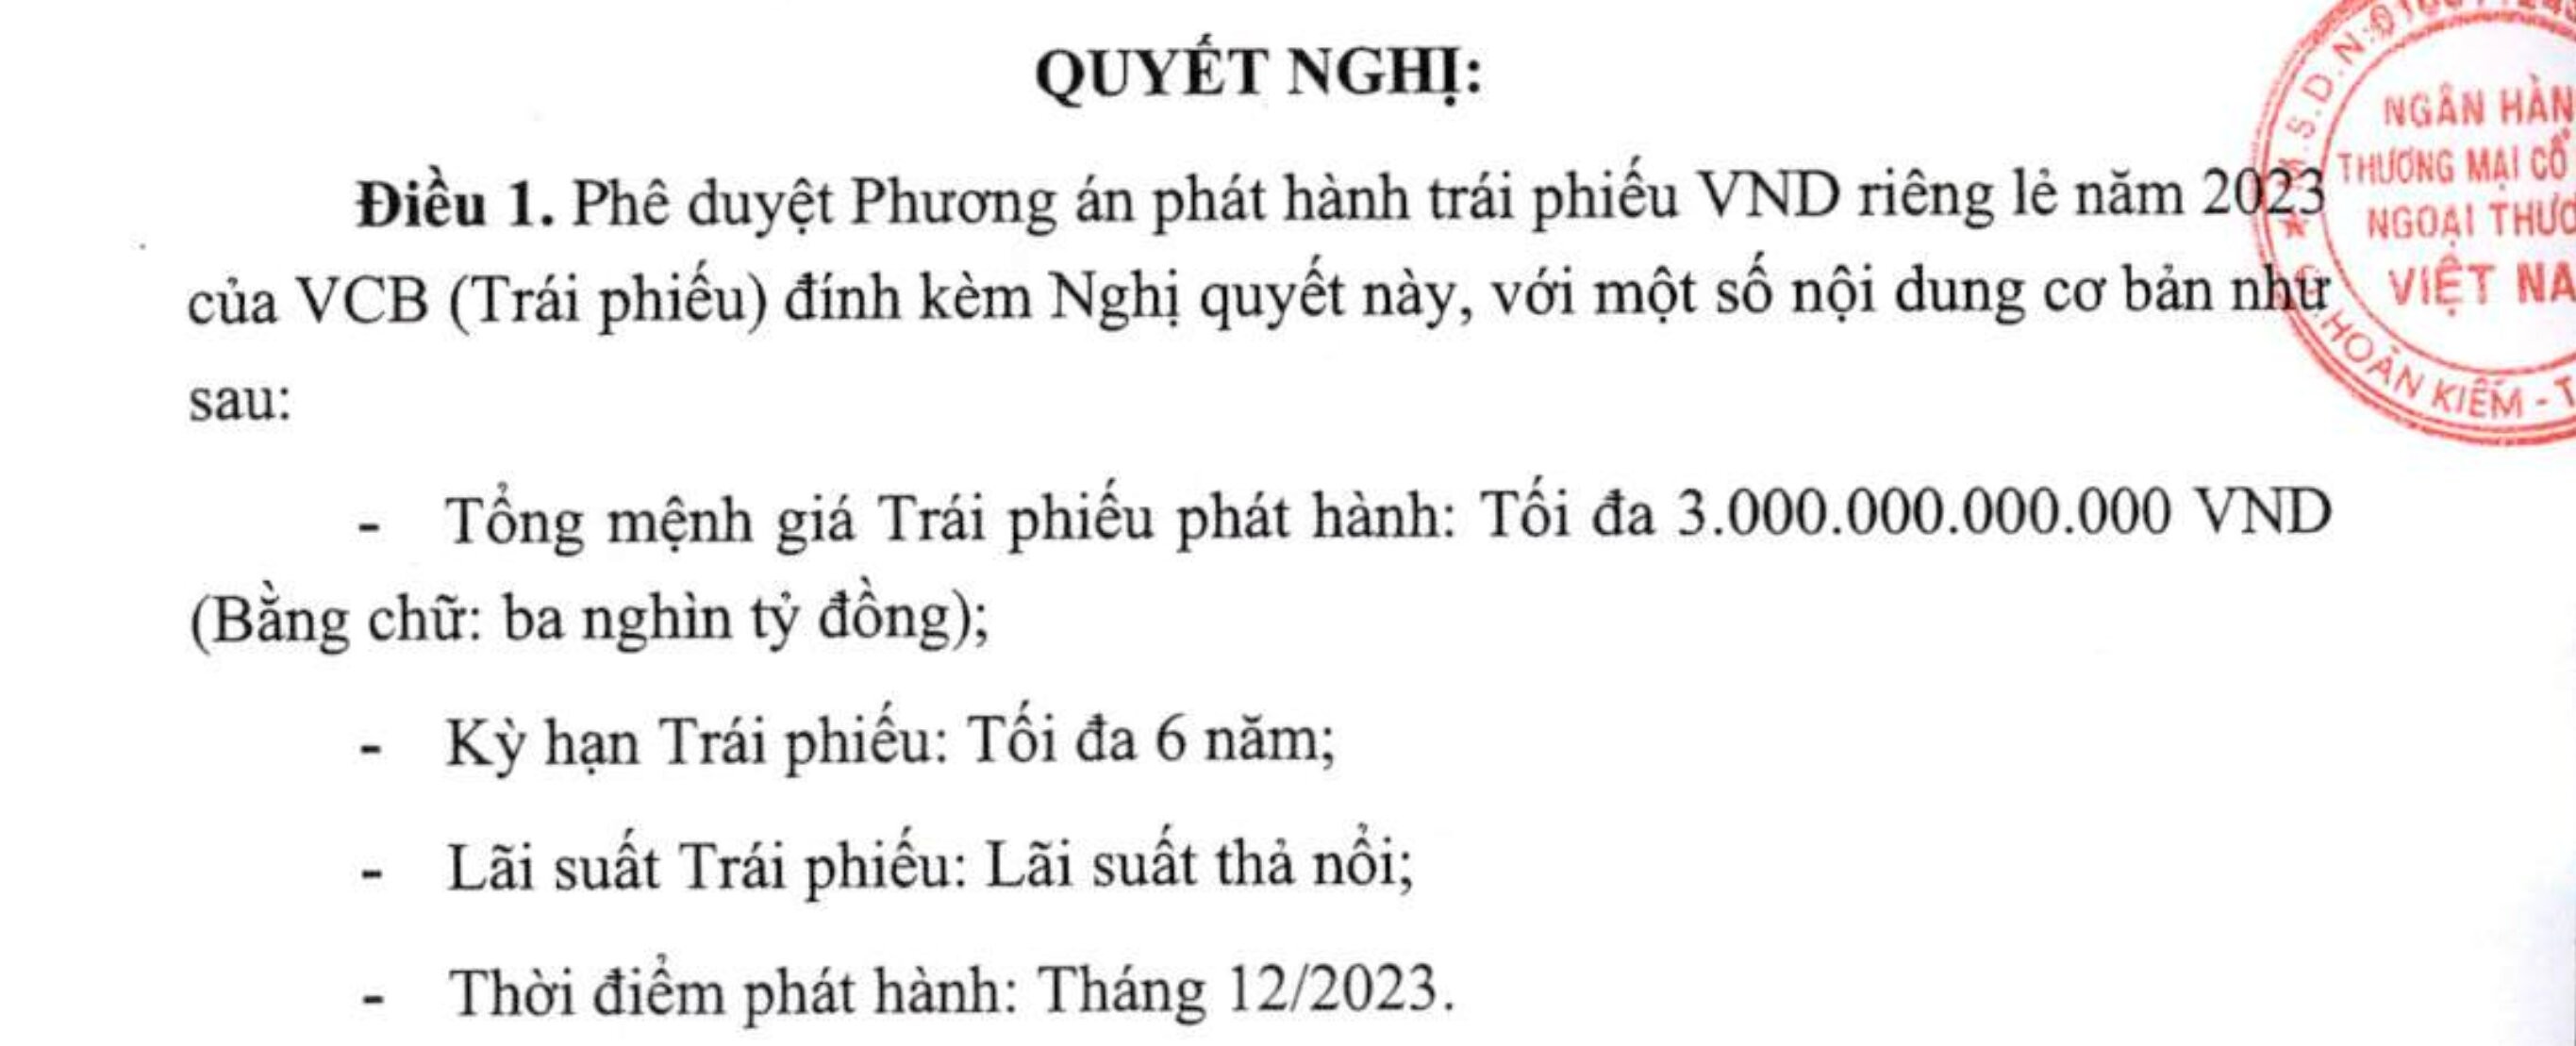 vua-chi-nghin-ty-mua-lai-trai-phieu-truoc-han-vietcombank-chuan-bi-phat-hanh-lo-trai-phieu-dau-tien-trong-nam-2023-1703136036.jpg